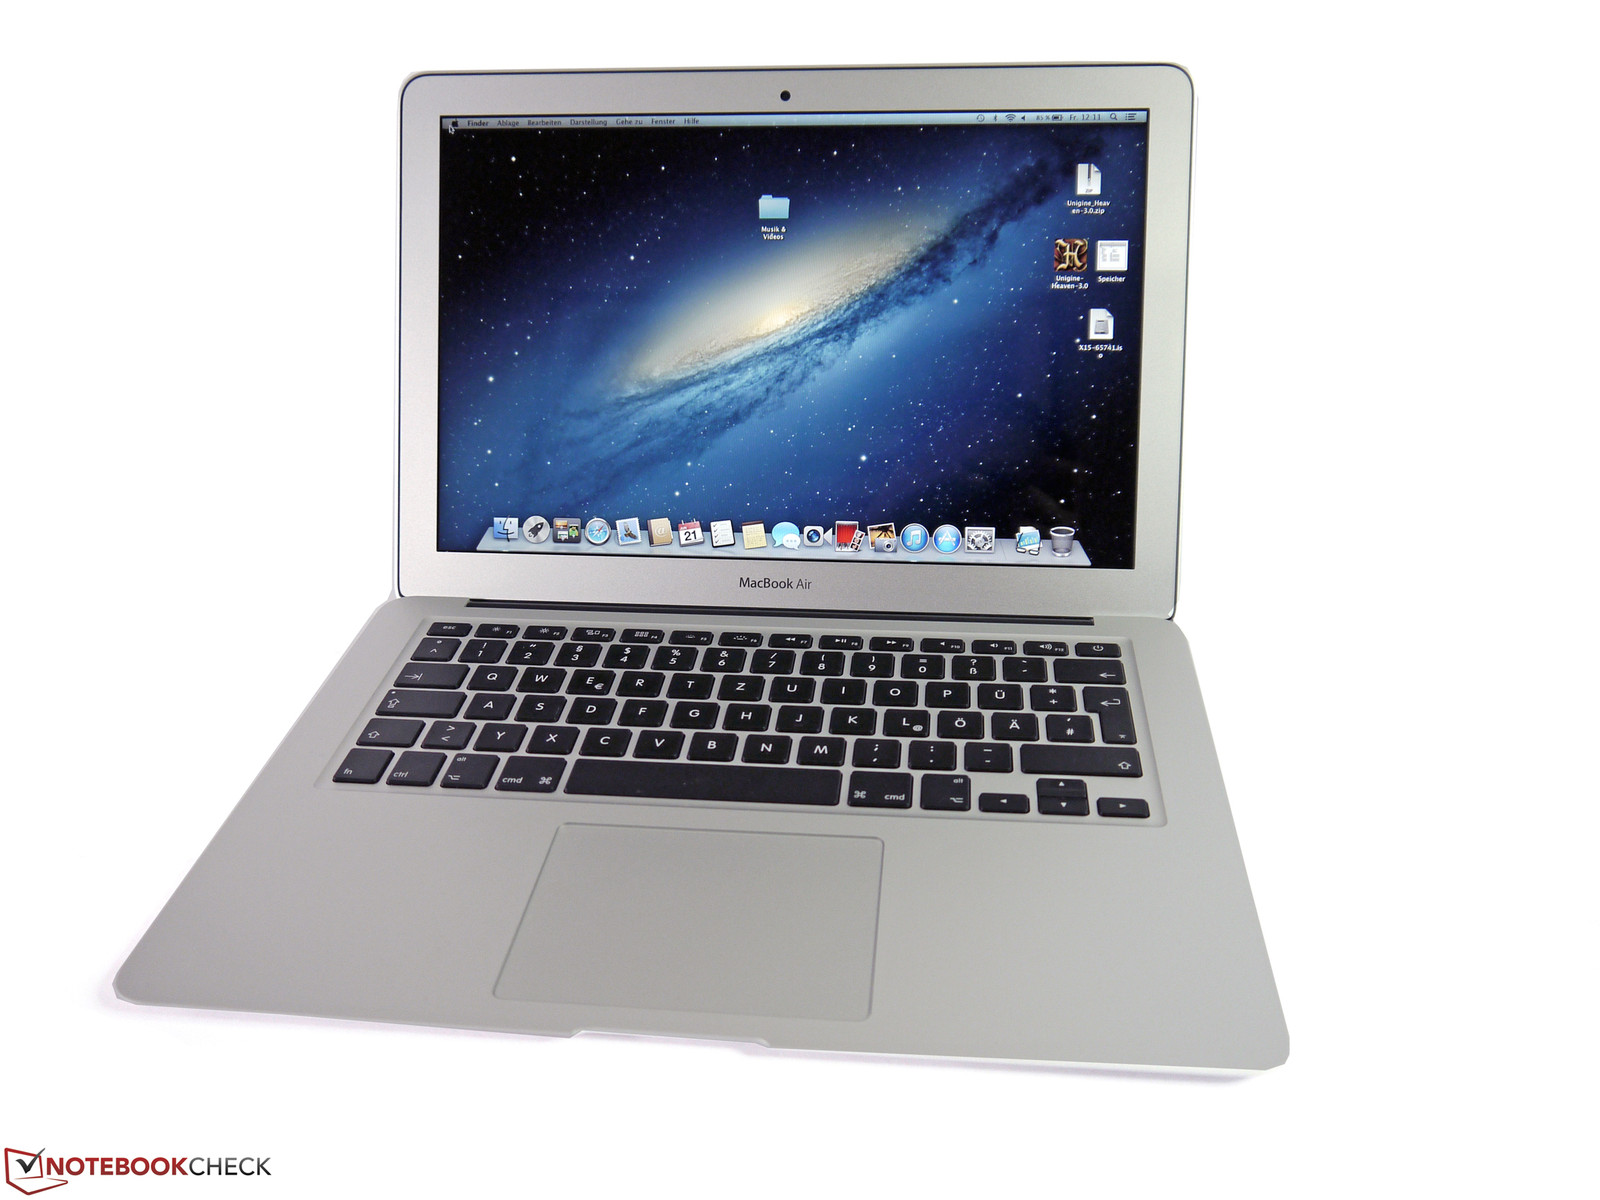 Apple MacBook Air 13 (2015) Notebook Review - NotebookCheck.net Reviews